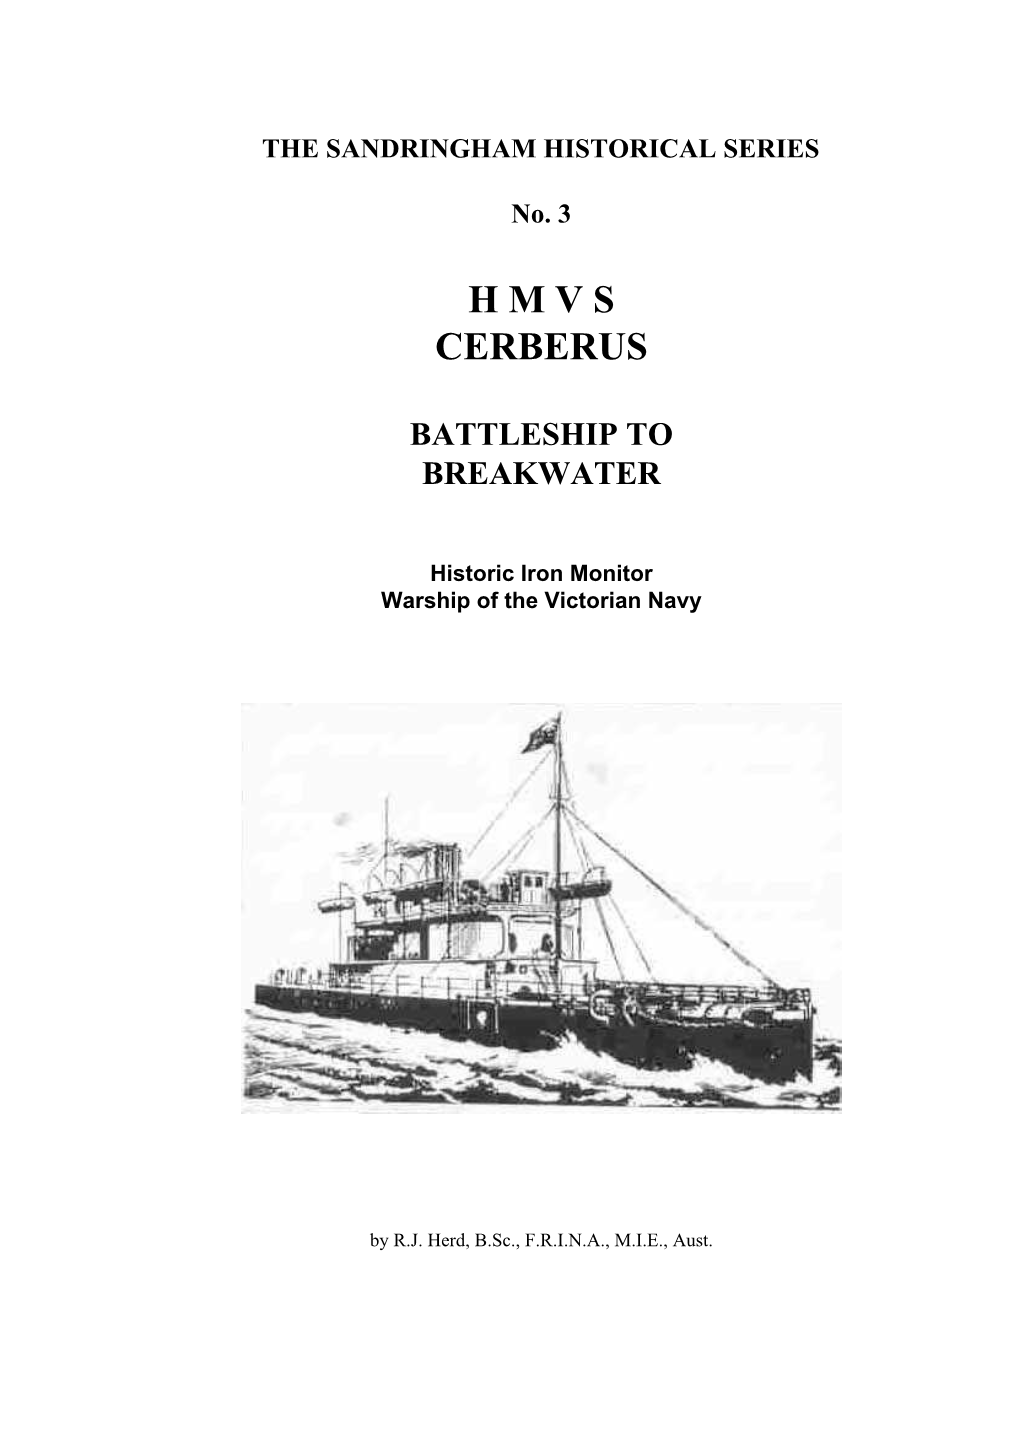 Battleship to Breakwater